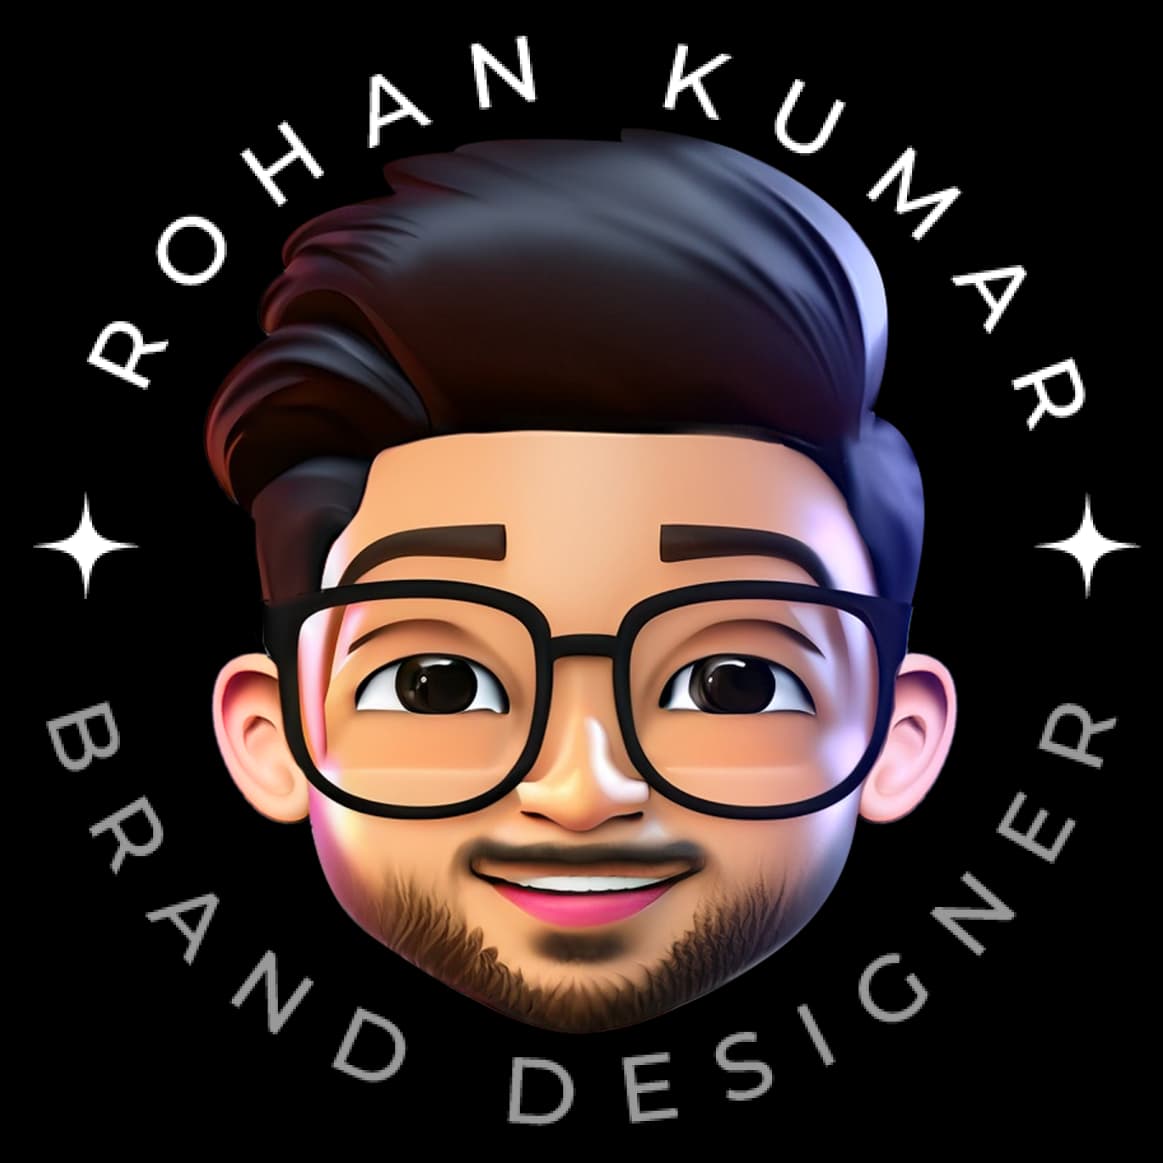 Rohan Kumar